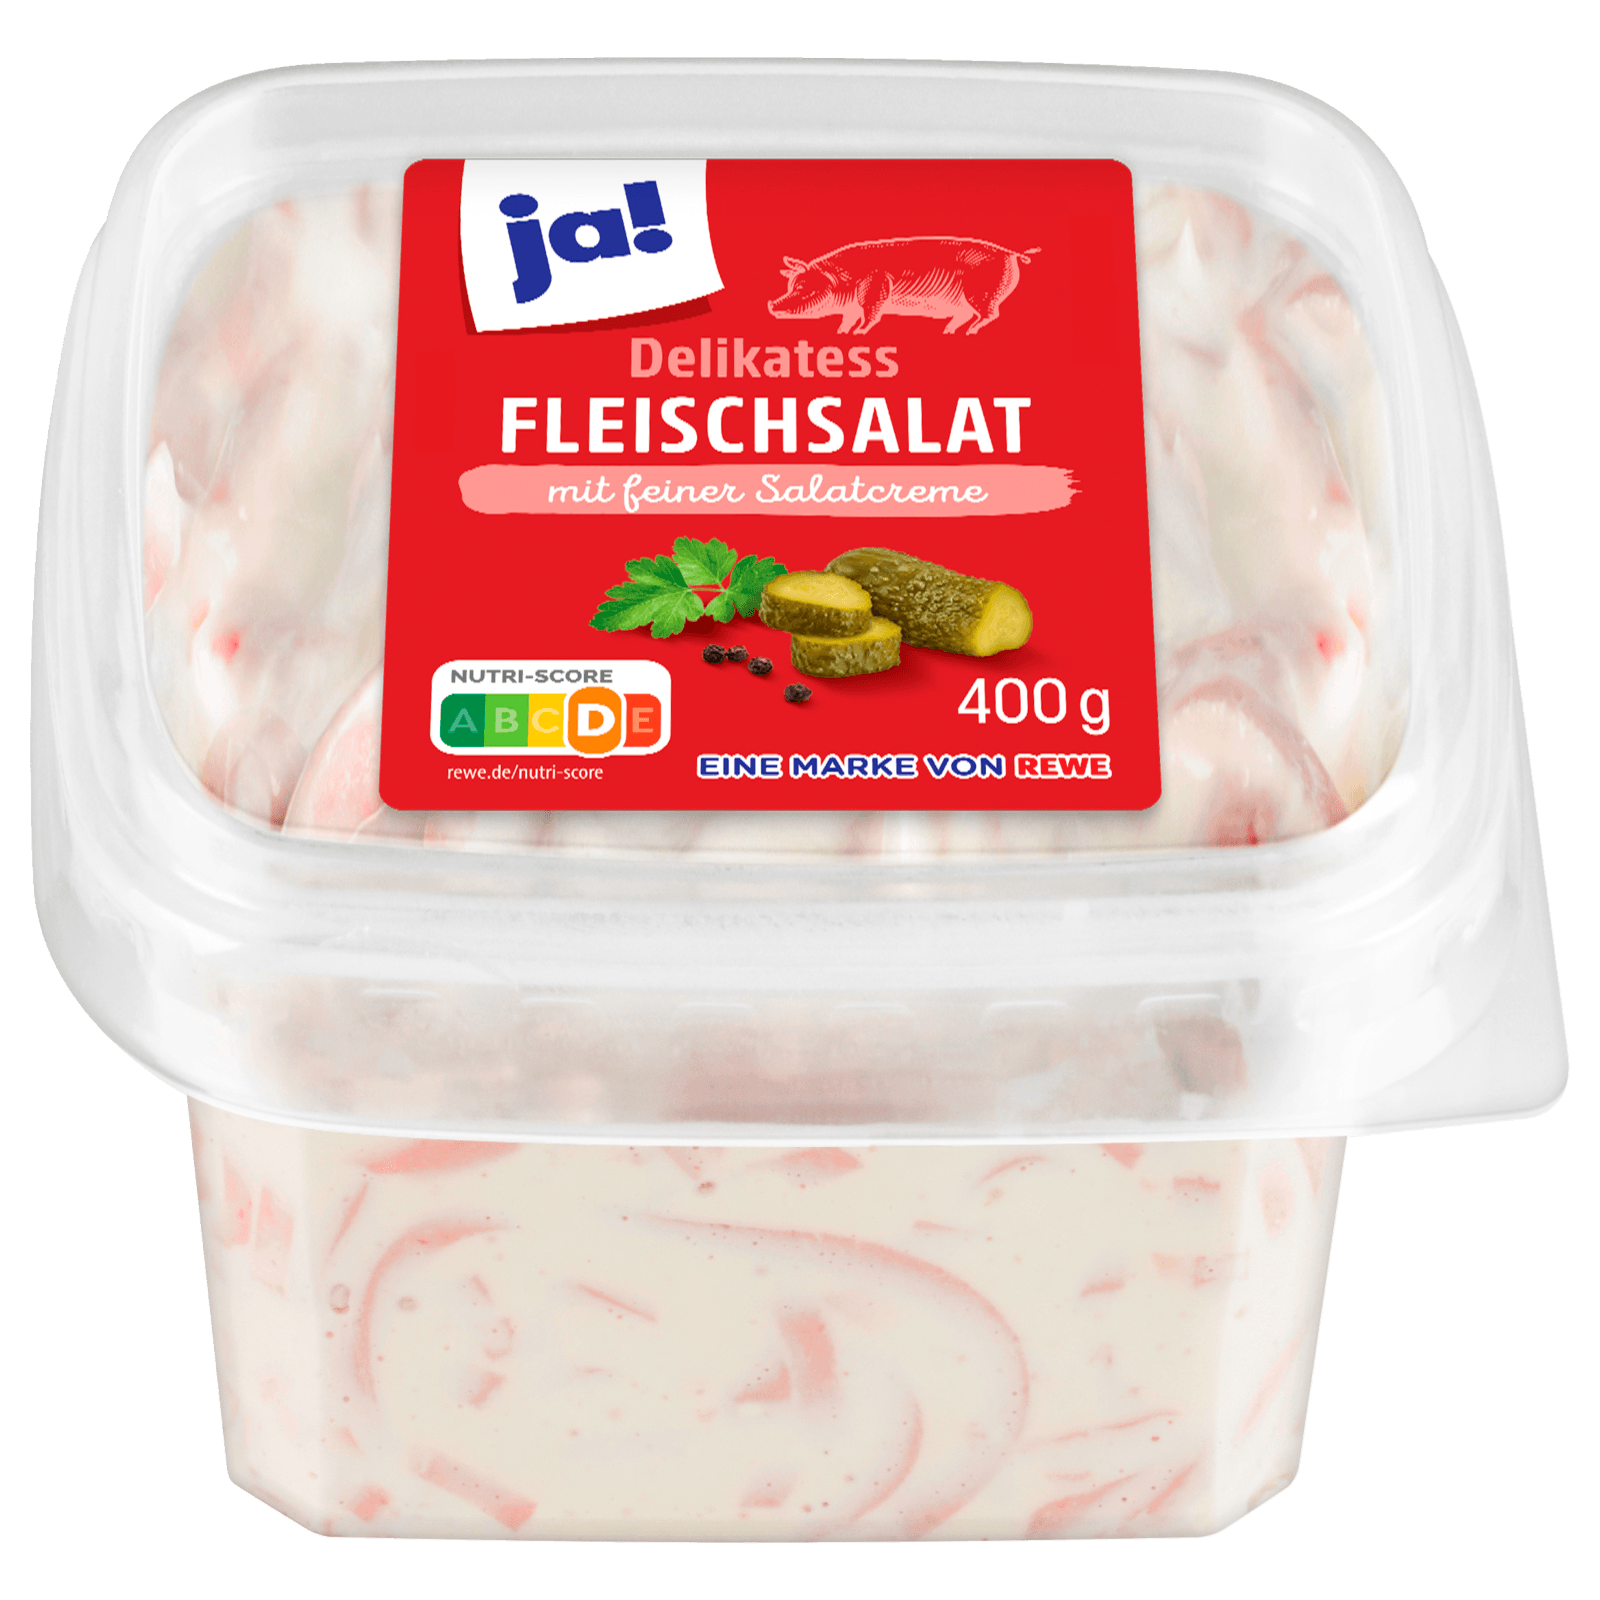 ja! Delikatess-Fleischsalat 400g bei REWE online bestellen!